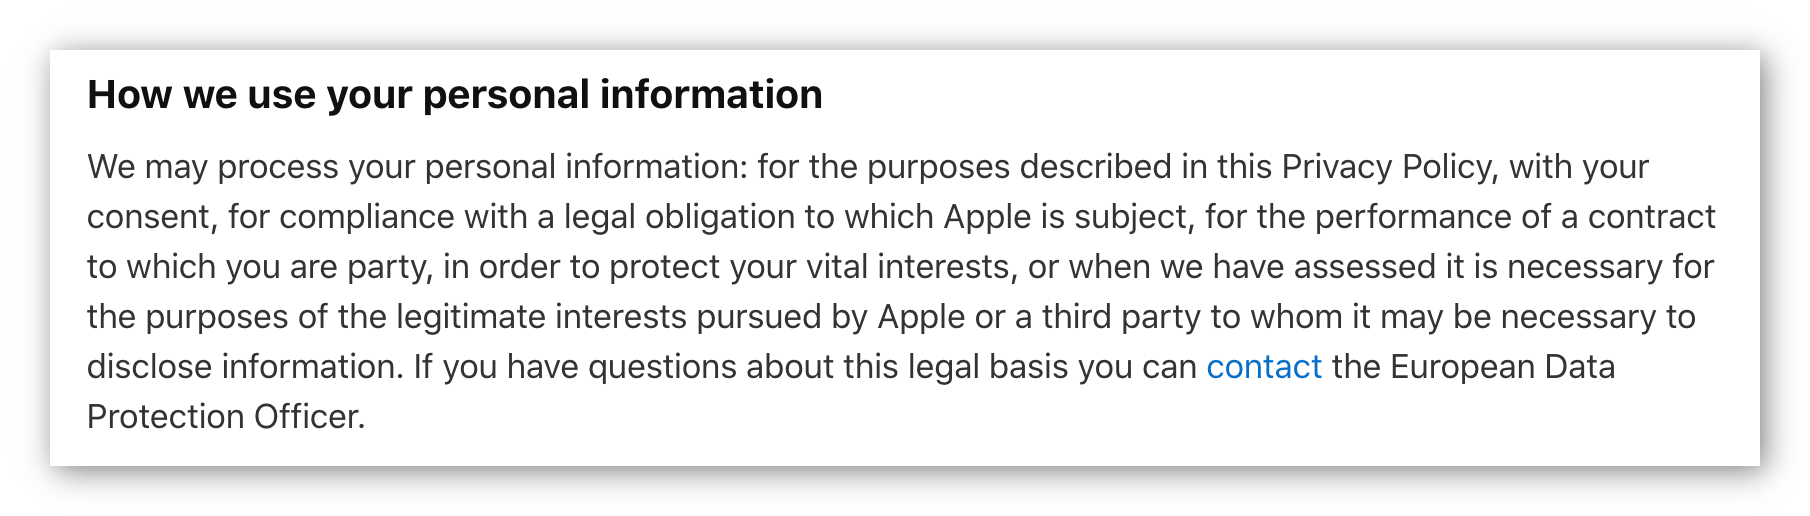 Skärmdump av Apples sekretesspolicy